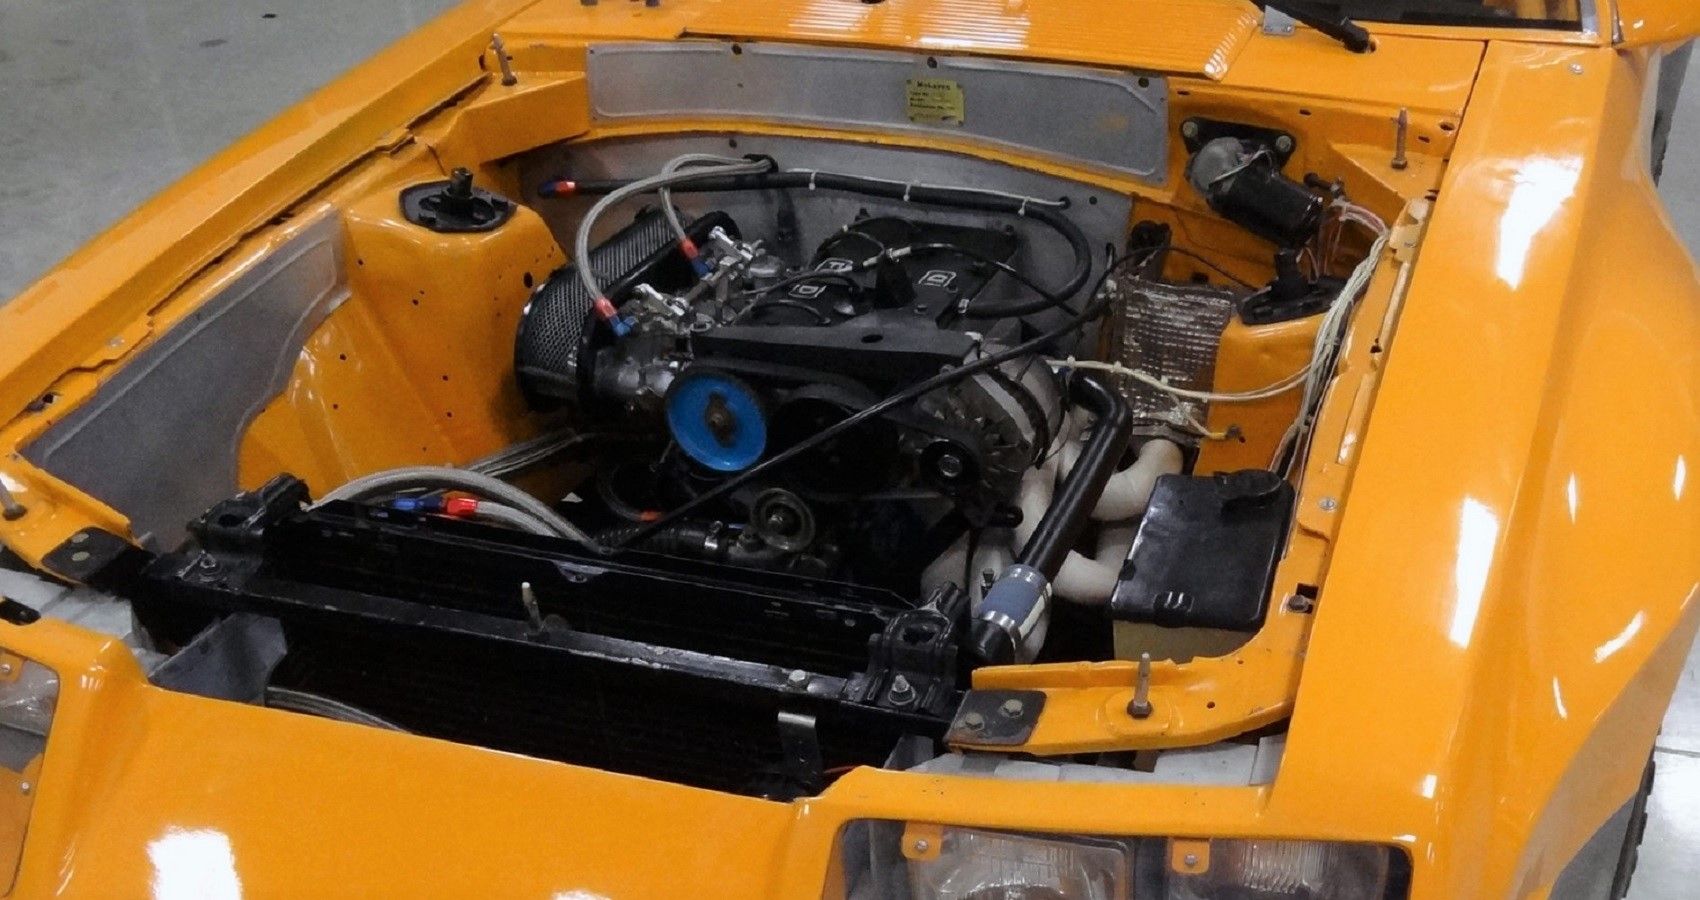 Orange Ford Mustang McLaren M81 engine bay